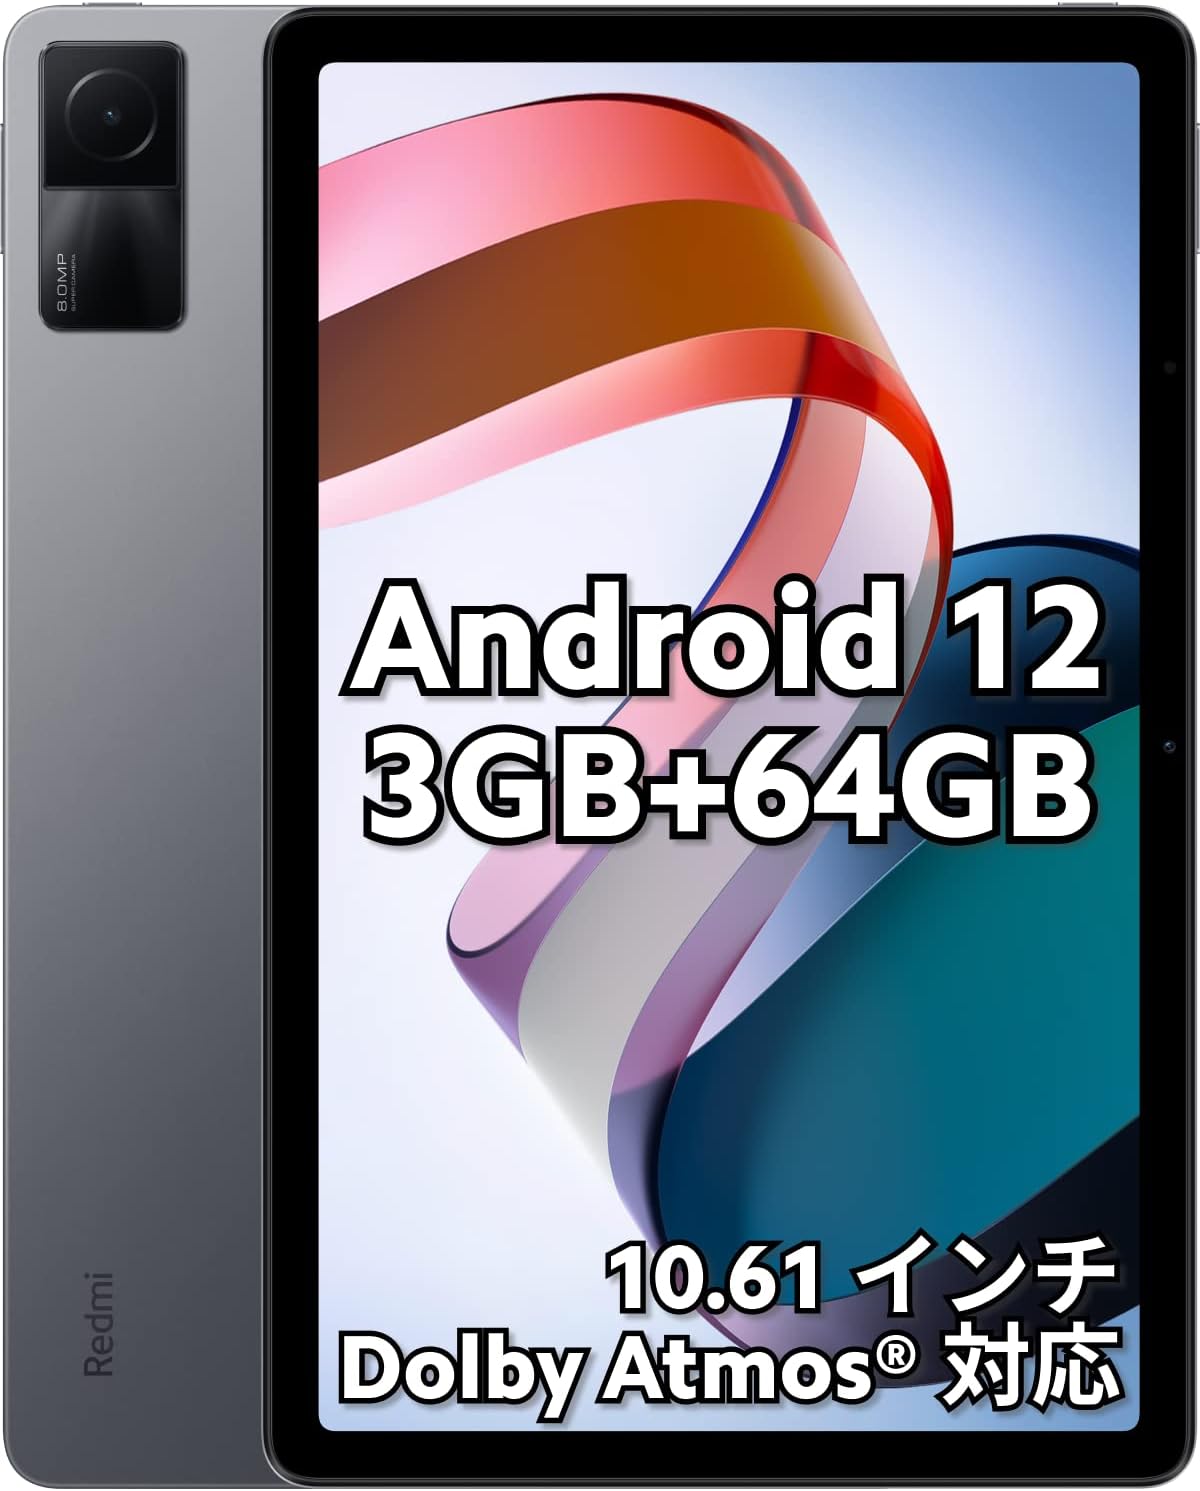 新品未開封 シャオミ(Xiaomi) タブレット Redmi Pad 3GB 64GB 日本語版 10.61インチディスプレ wi-fiモデル Dolby Atmos 対応 18W急速充電 8,000mAh大容量バッテリー 軽量 グラファイトグレー